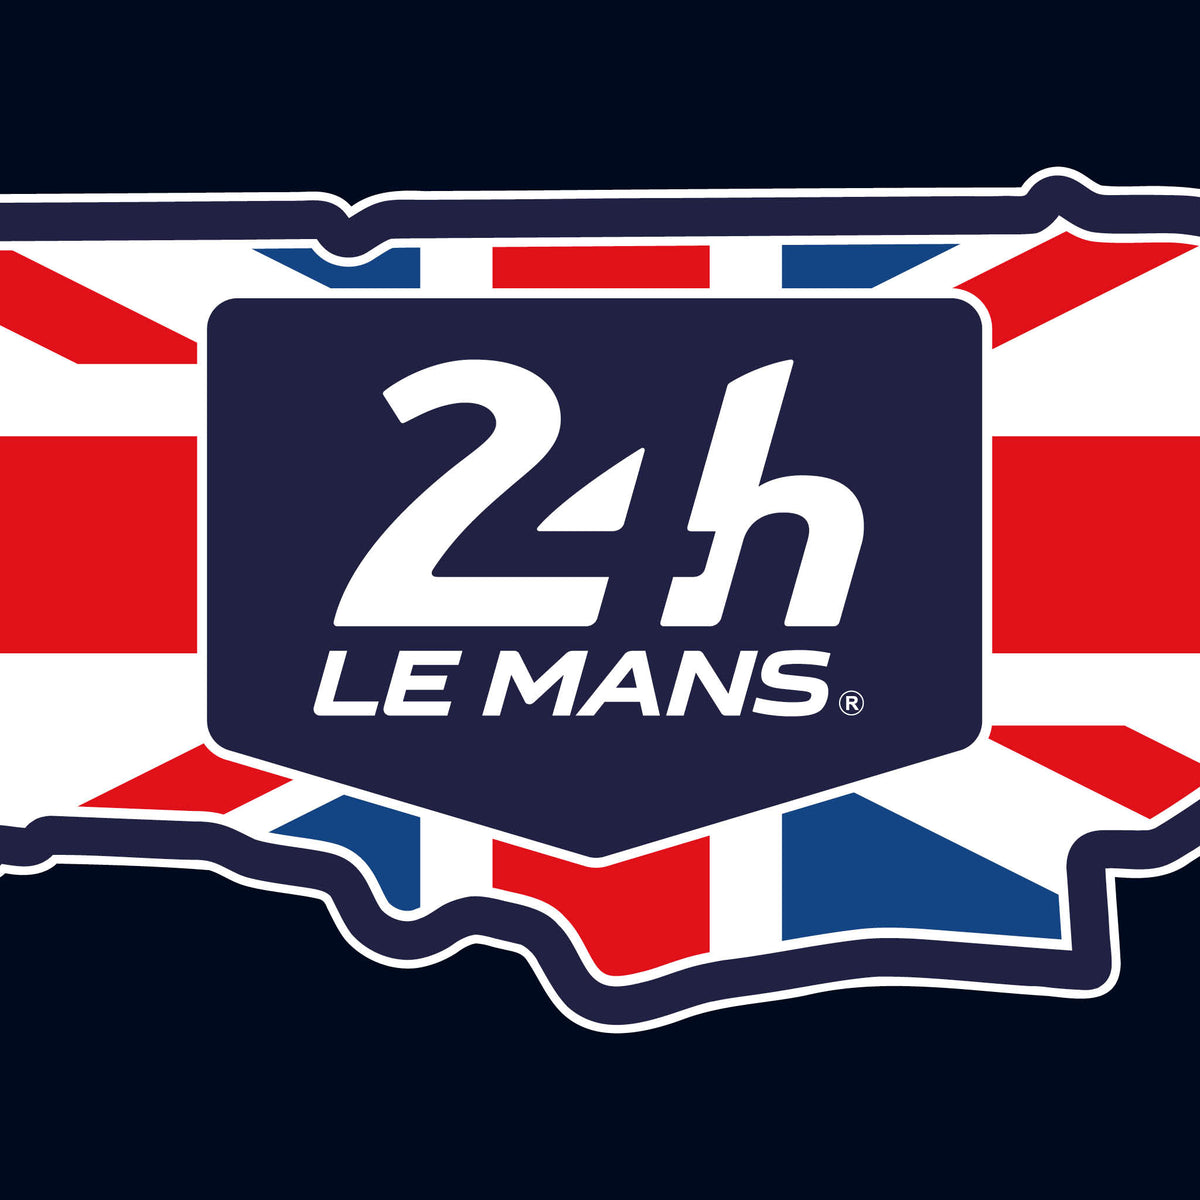 Official Le Mans Union Flag Circuit Sticker